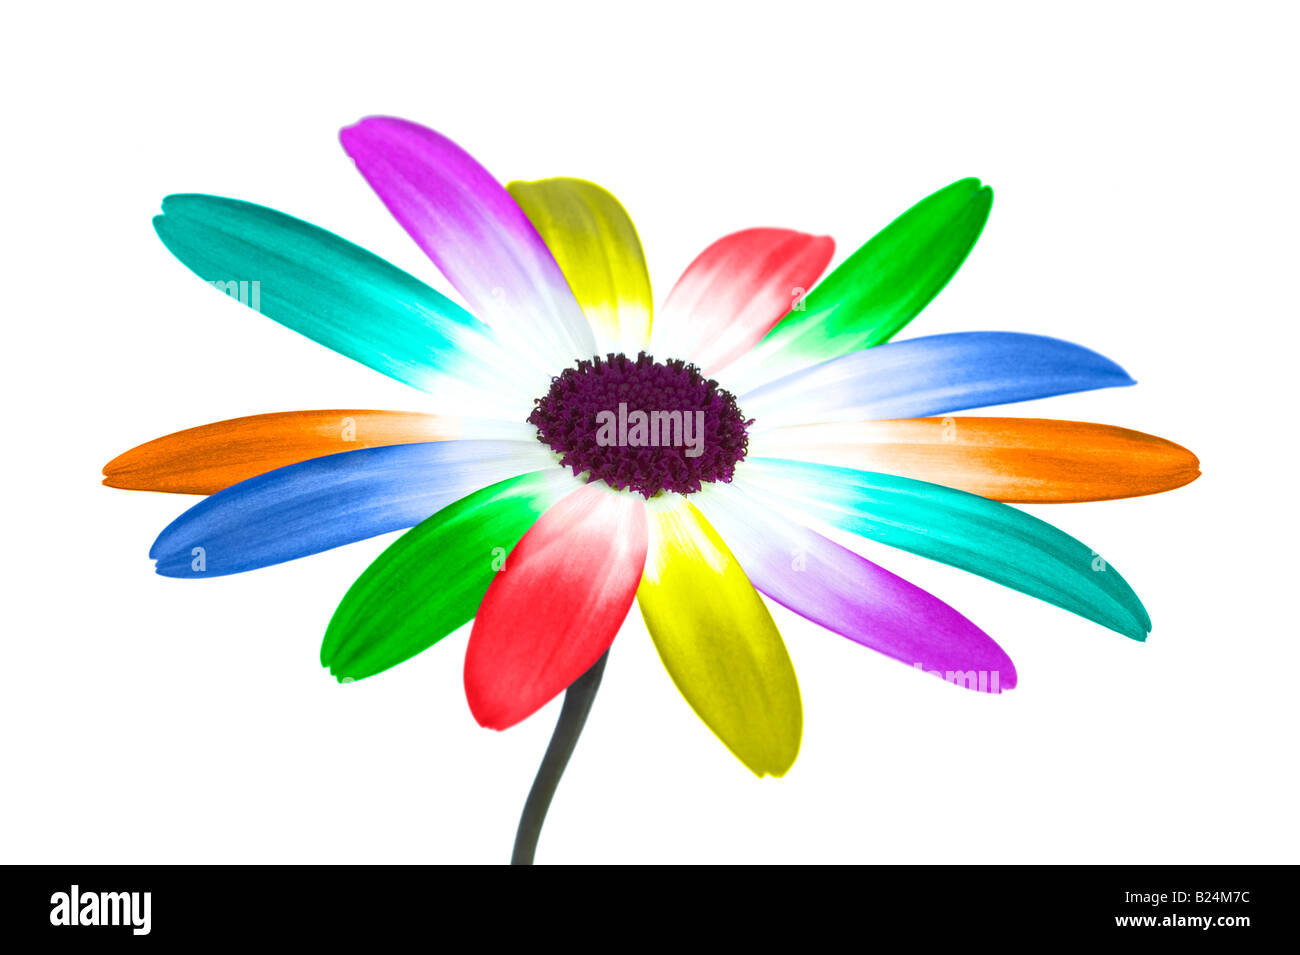 Image abstraite d'une marguerite avec ses pétales aux couleurs de l'arc en ciel Banque D'Images